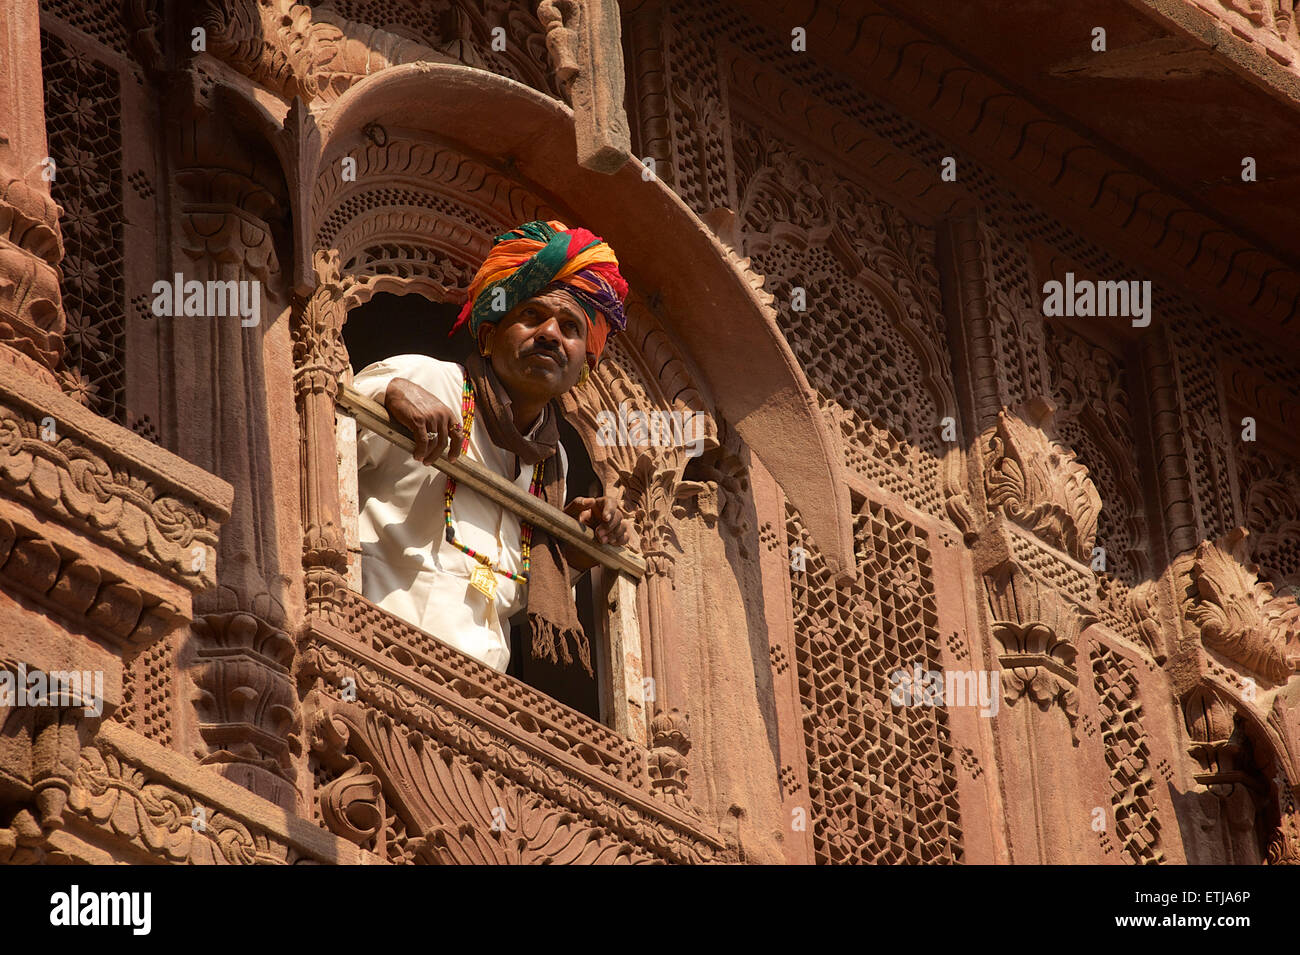 L'homme du Rajasthan à partir de fenêtre en façade sculptée à Fort Mehrangarh, Jodhpur, Rajasthan, India Banque D'Images